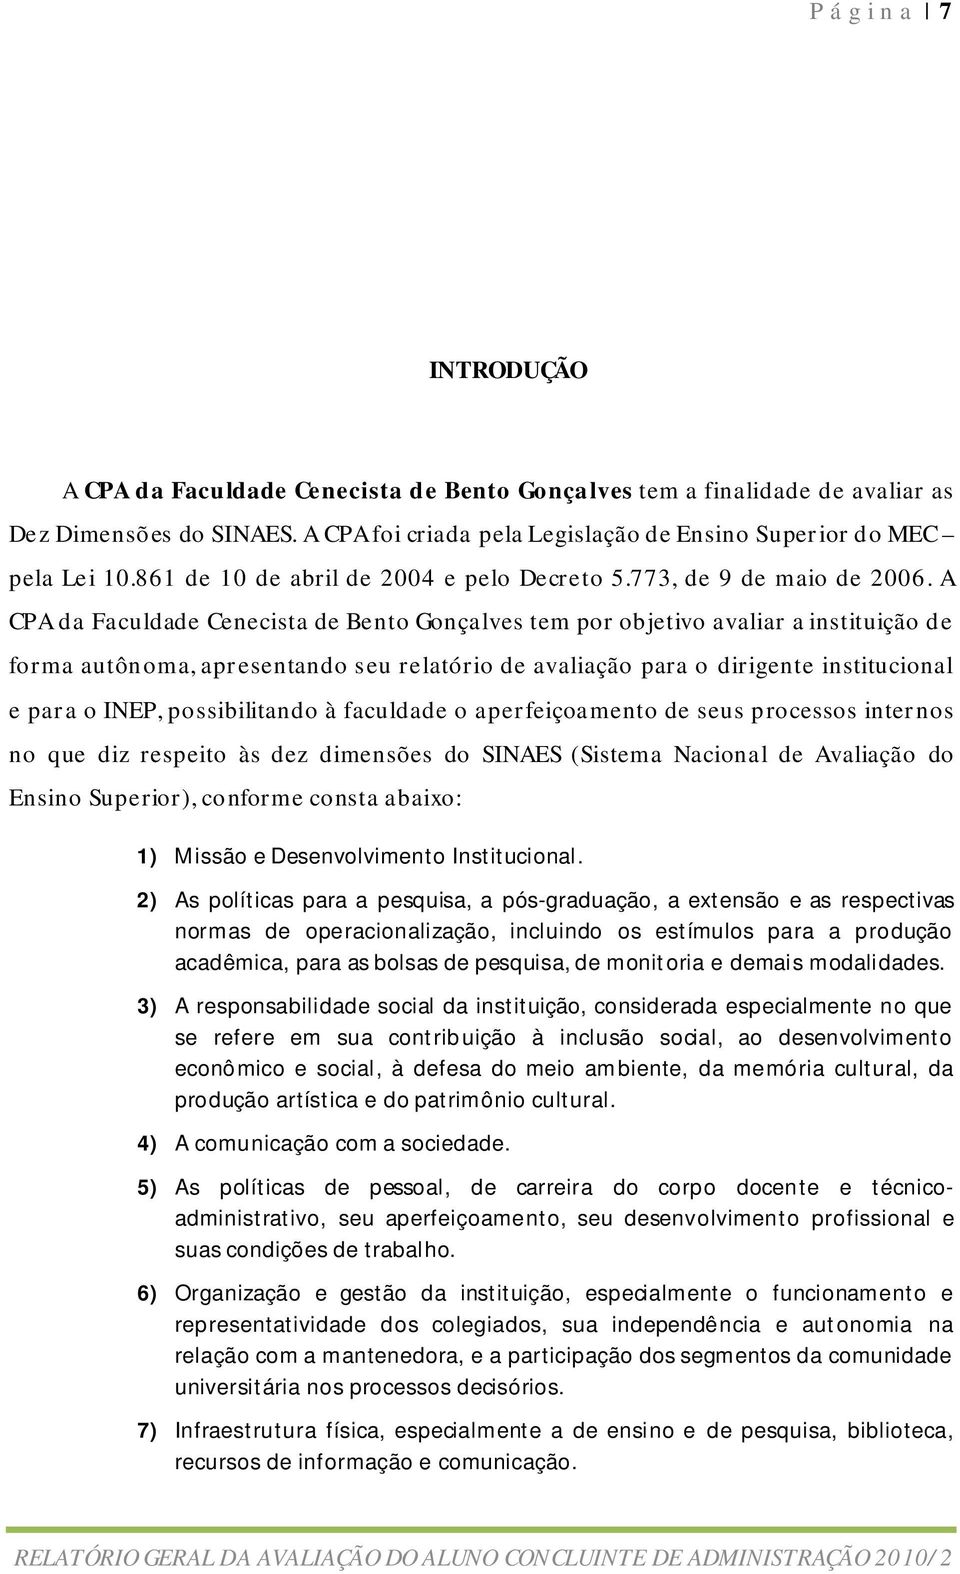 A CPA da Faculdade Cenecista de Bento Gonçalves tem por objetivo avaliar a instituição de forma autônoma, apresentando seu relatório de avaliação para o dirigente institucional e para o INEP,